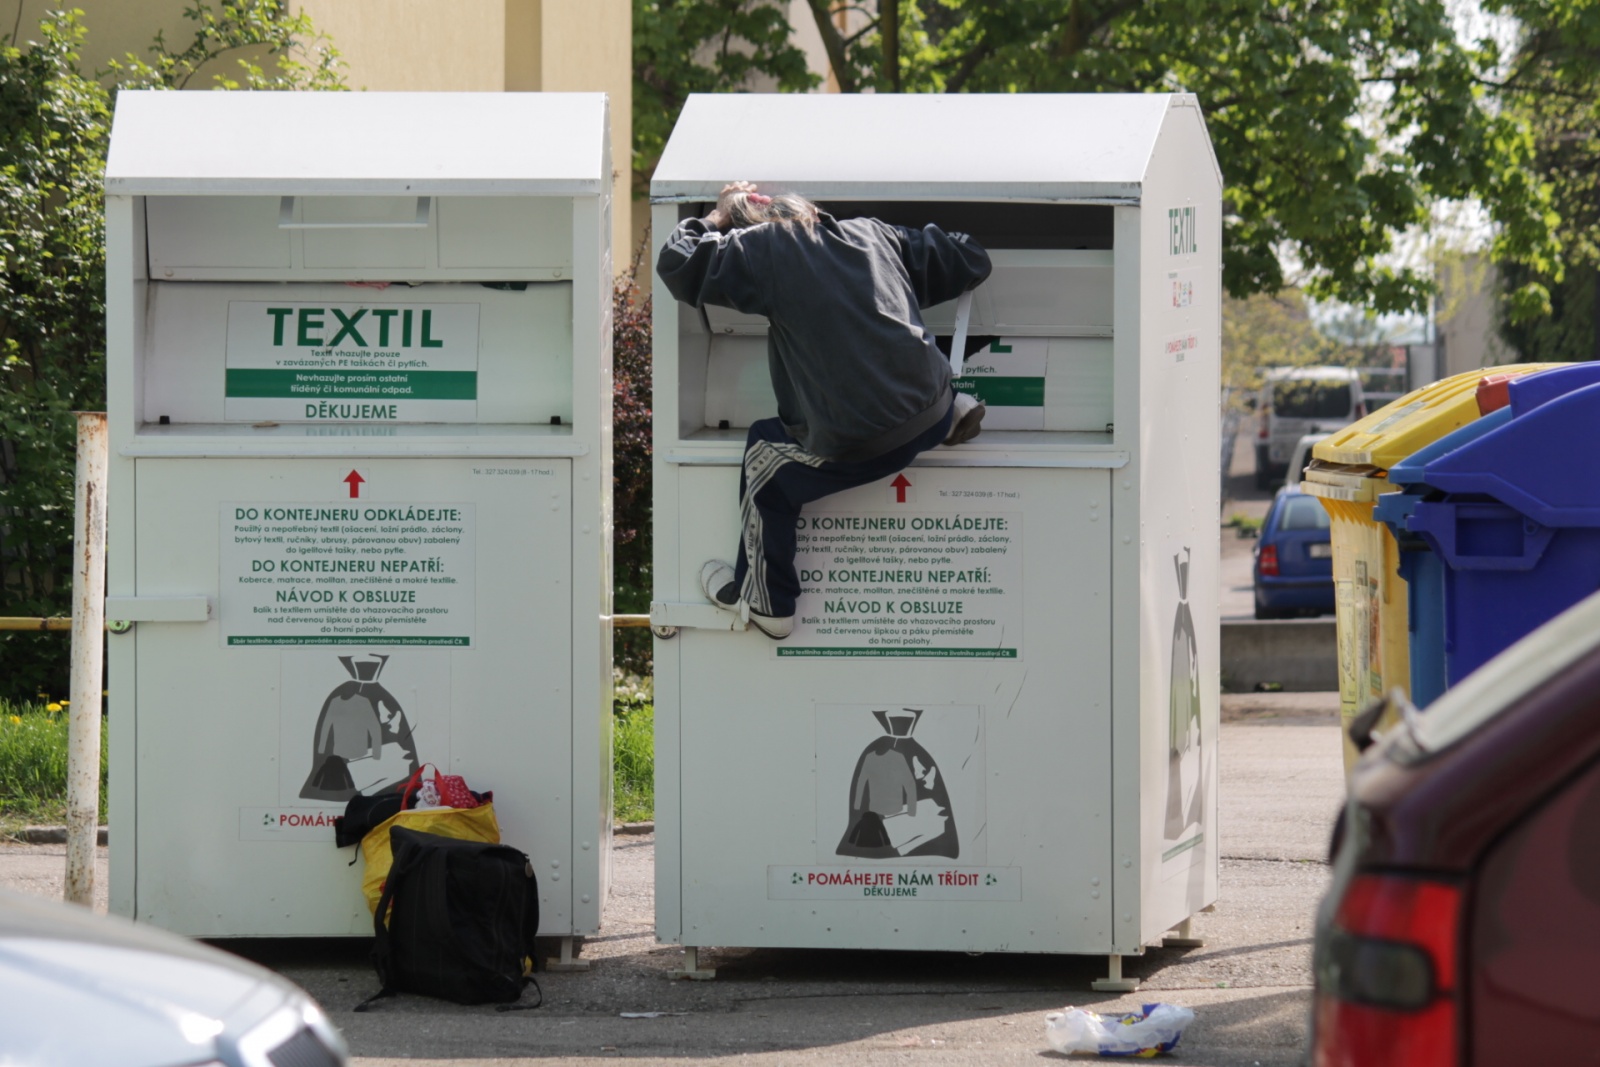 Žena si spletla kontejner na textil se samoobsluhou - Benešovský deník